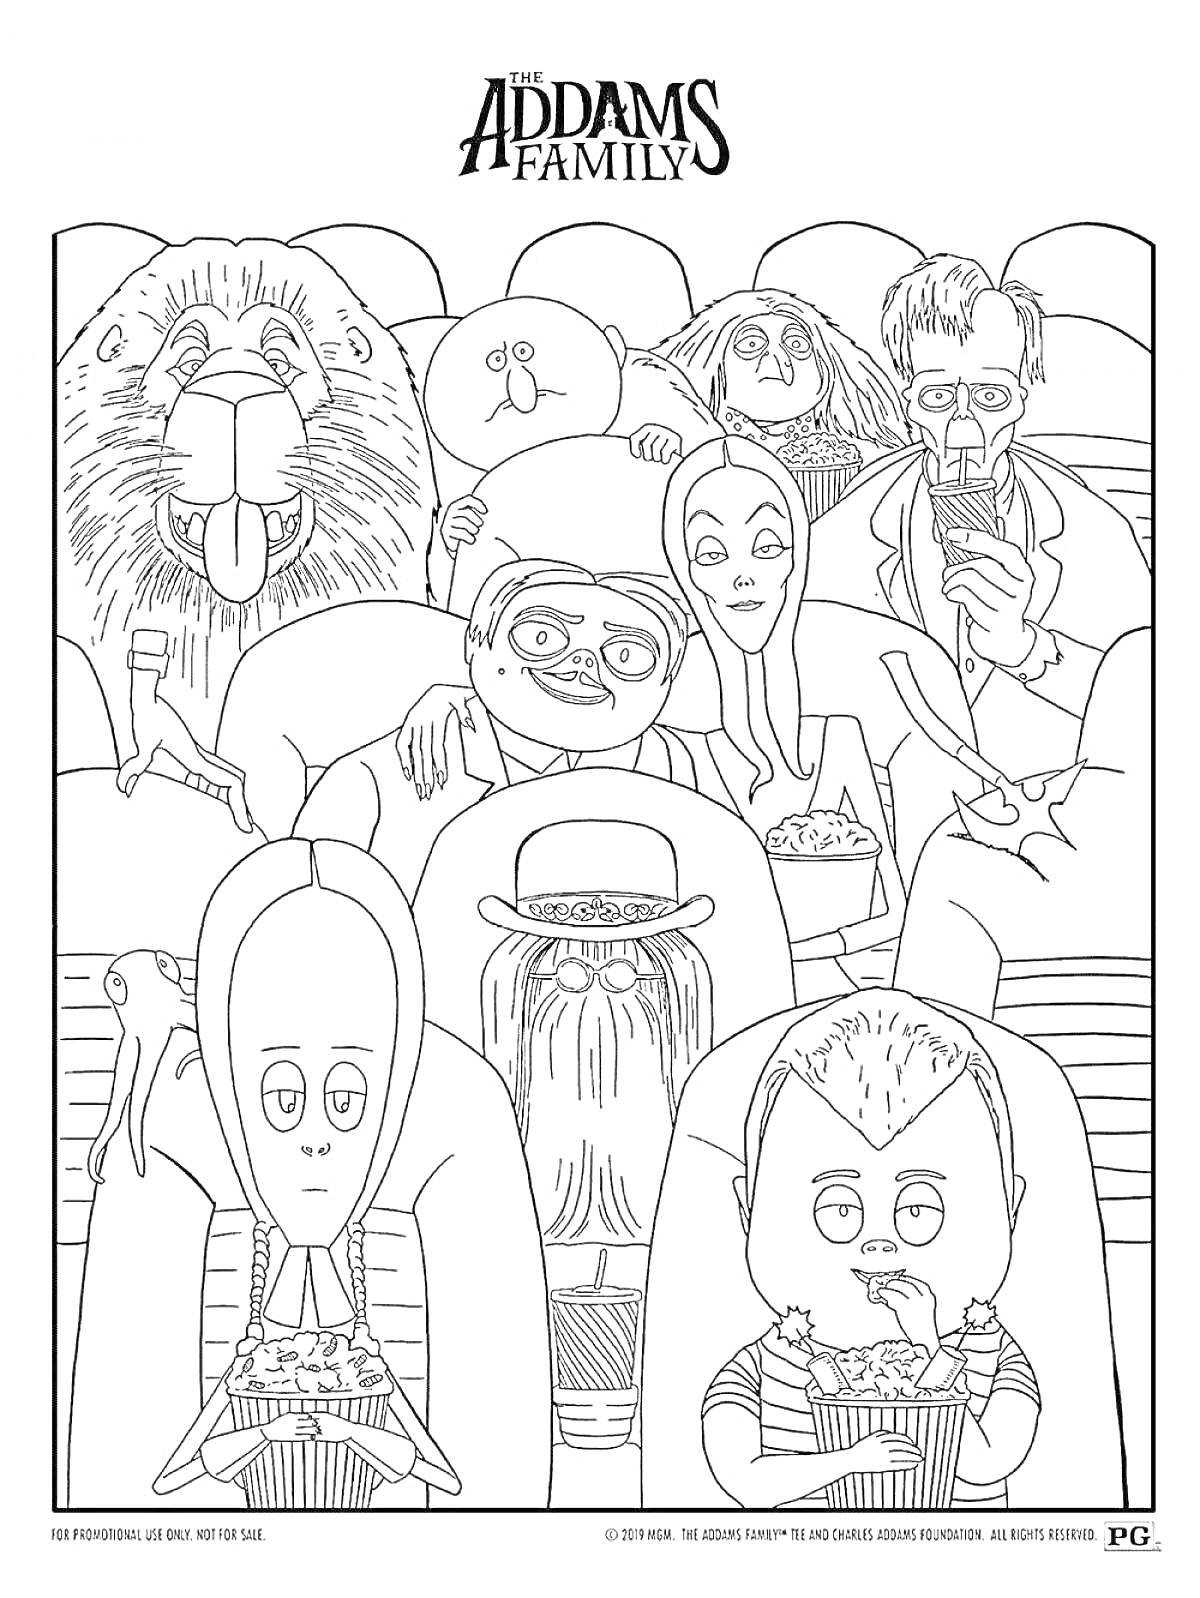 Семейка Аддамс в кинотеатре: лев, три мужчины, женщина, волосатое существо, ребёнок